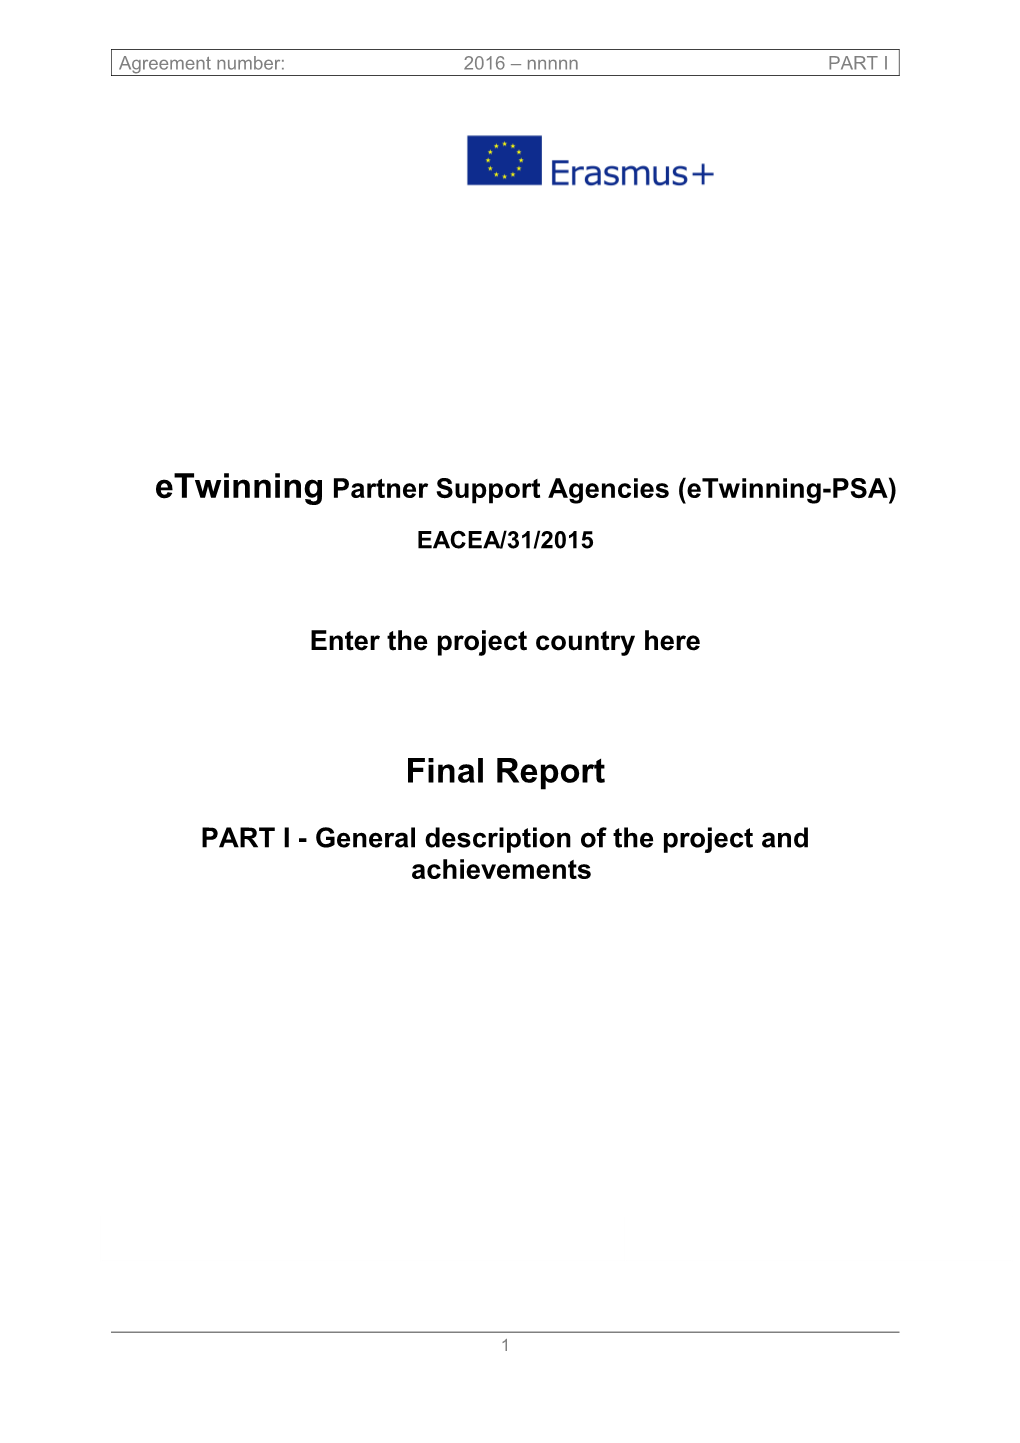 Etwinningpartner Support Agencies (Etwinning-PSA)